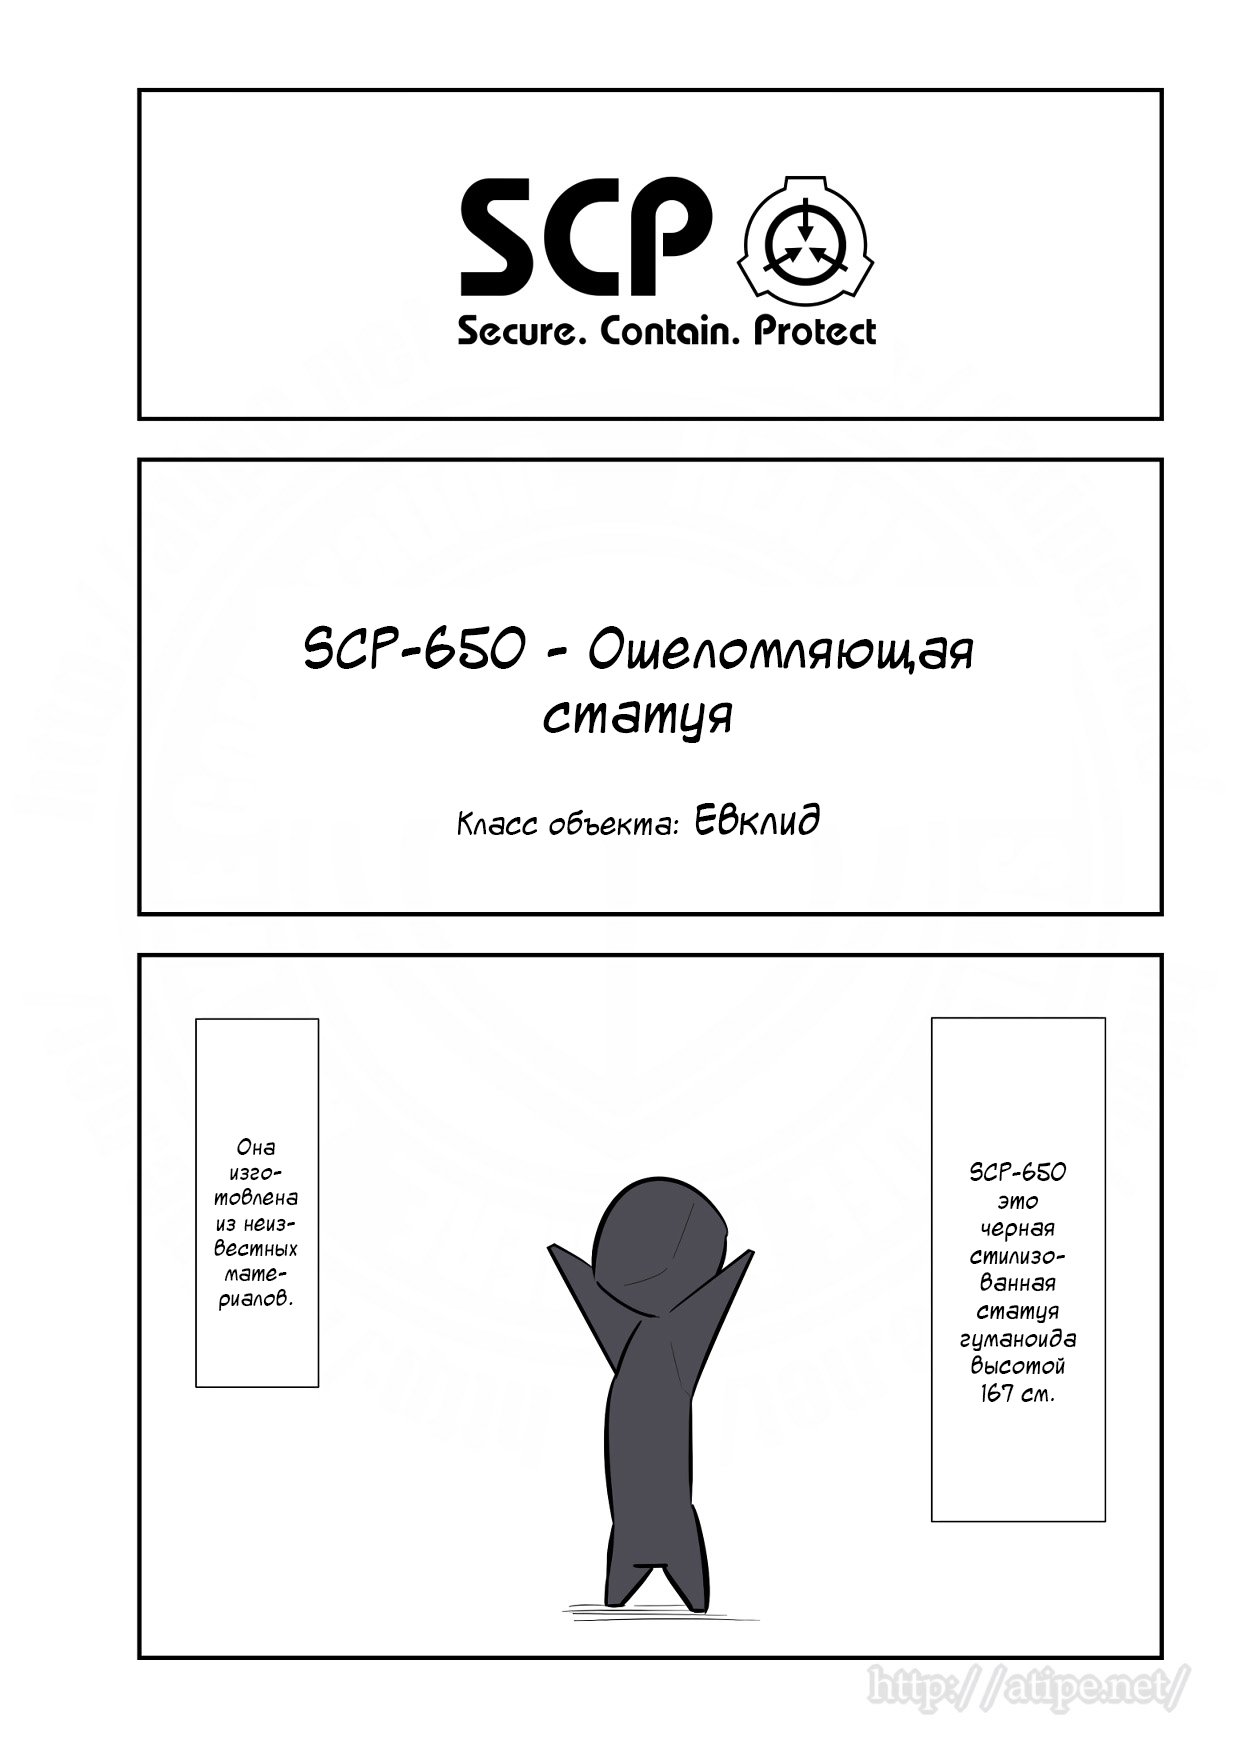 Упрощенный SCP 1 - 139 SCP-650 - Ошеломляющая статуя